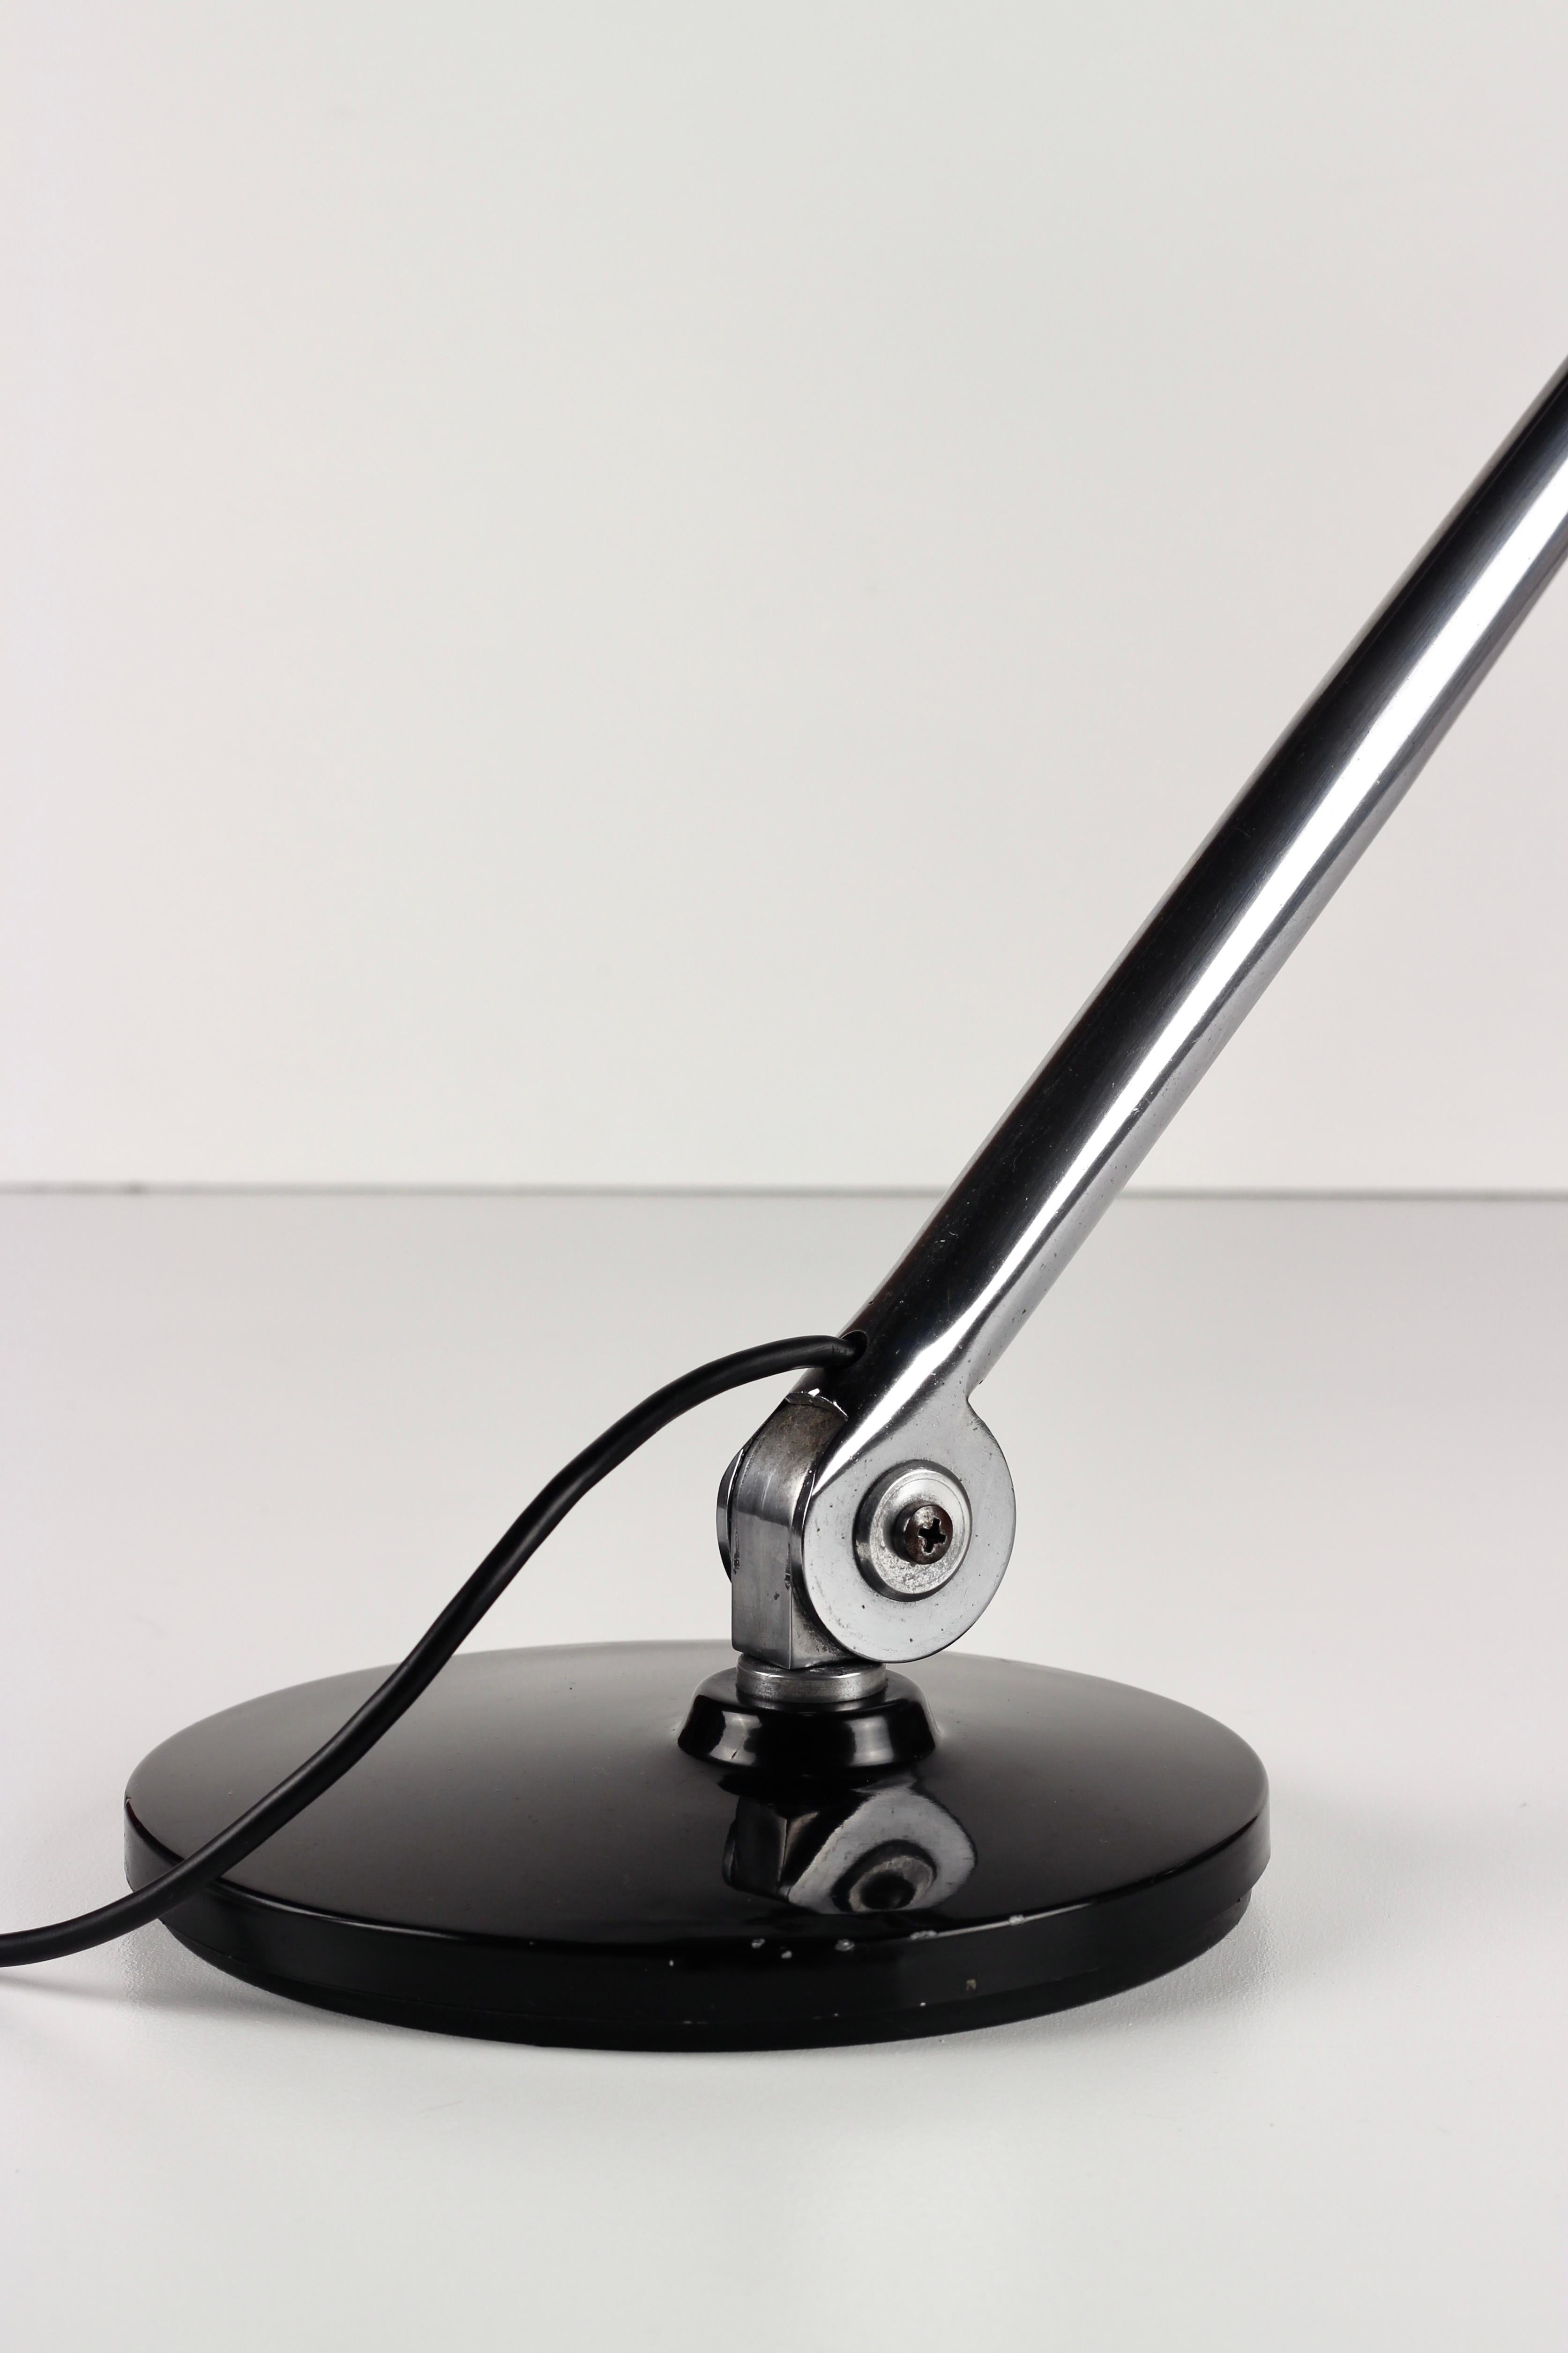 Chrome and Aluminium Fase desk lamp Modelos patentados Madrid Espana For Sale 3